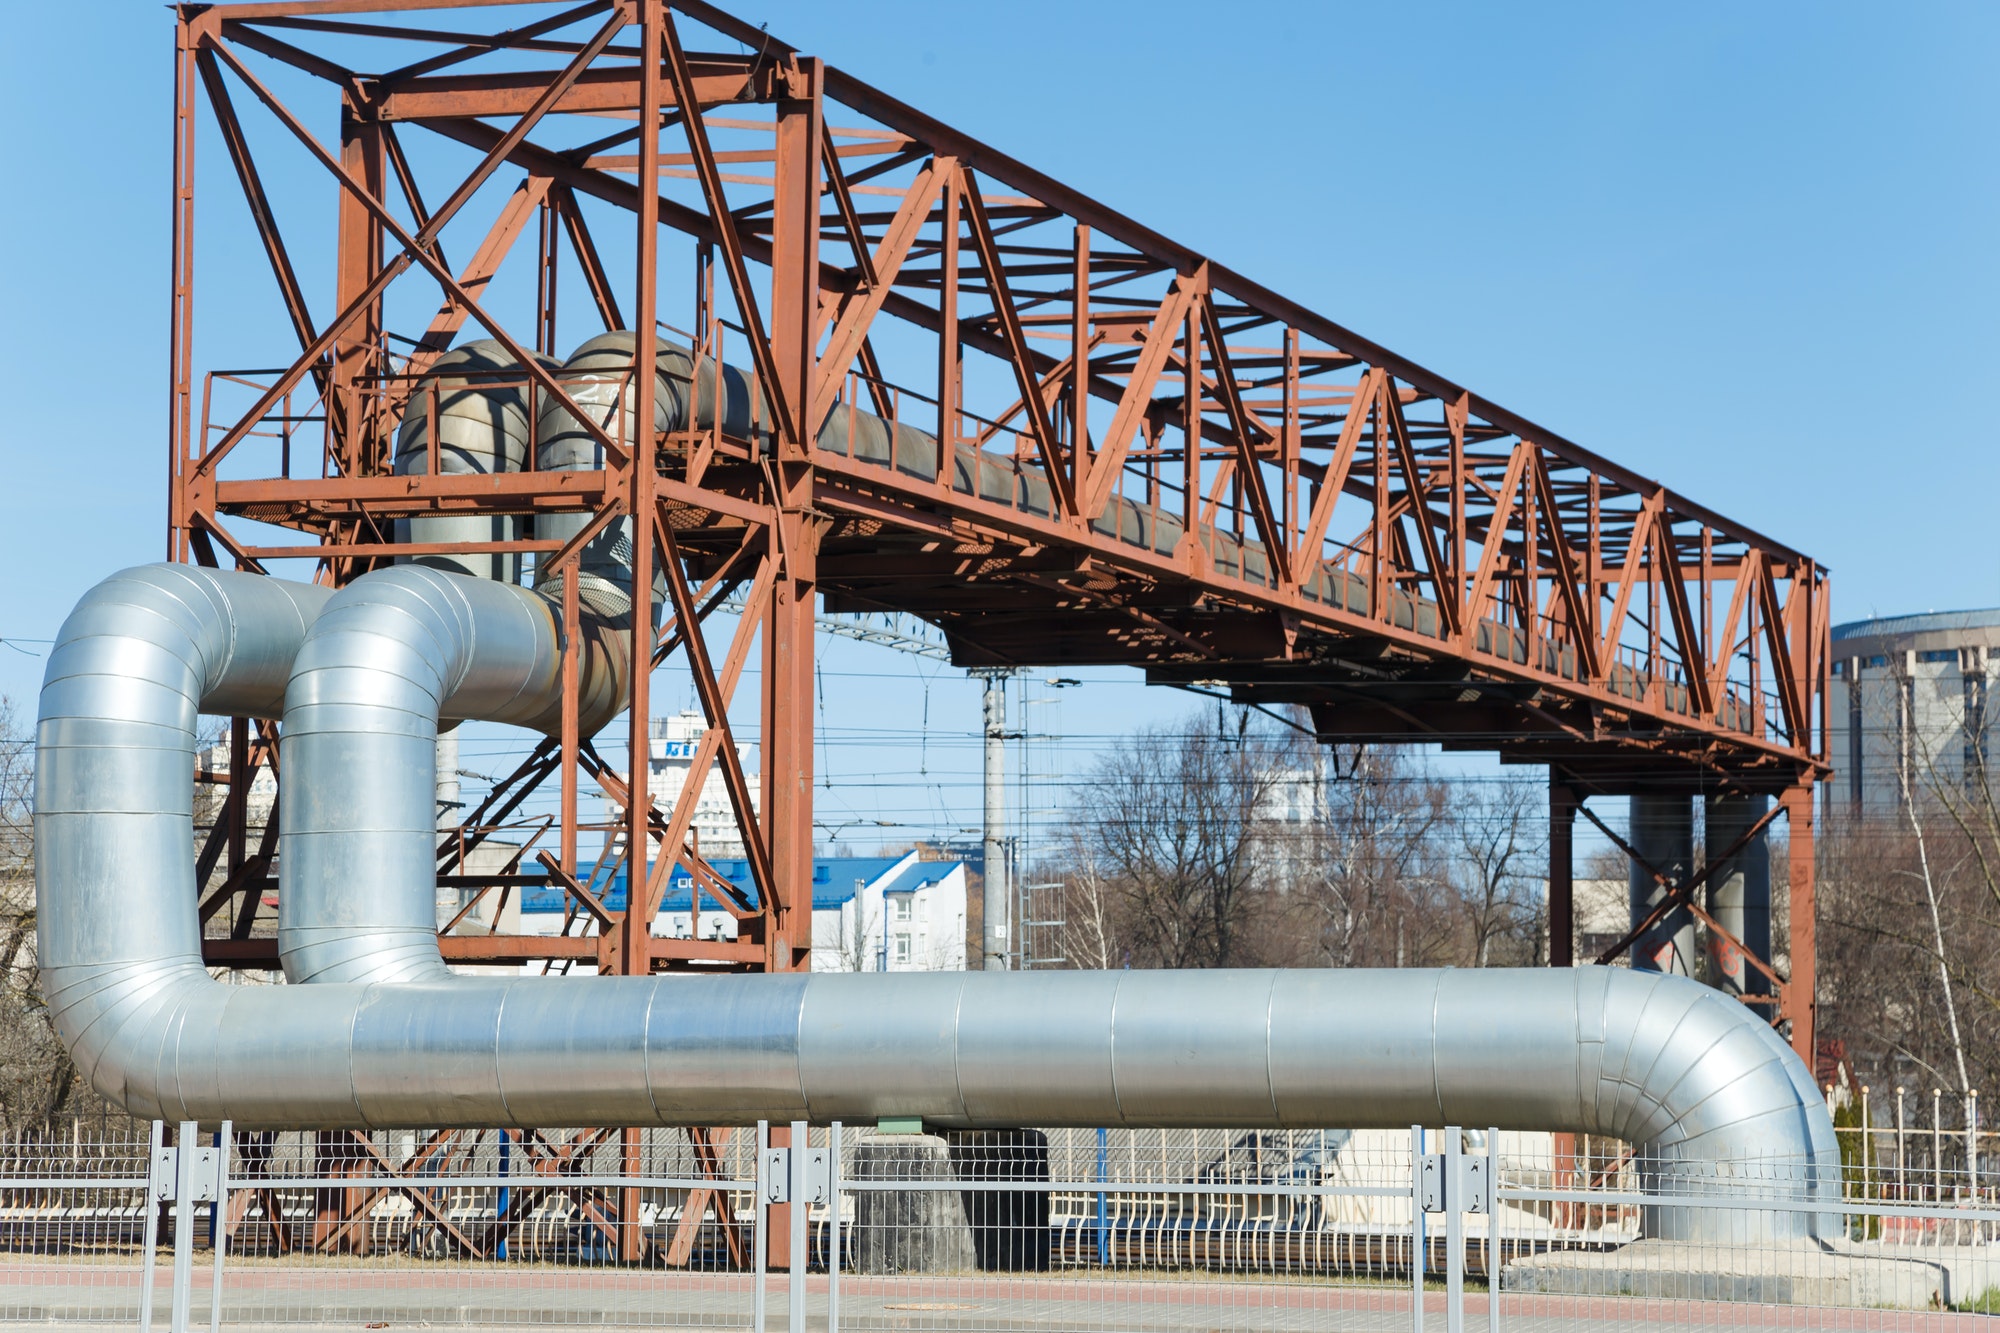 Industrial huge pipes on metal viaduct outdoor